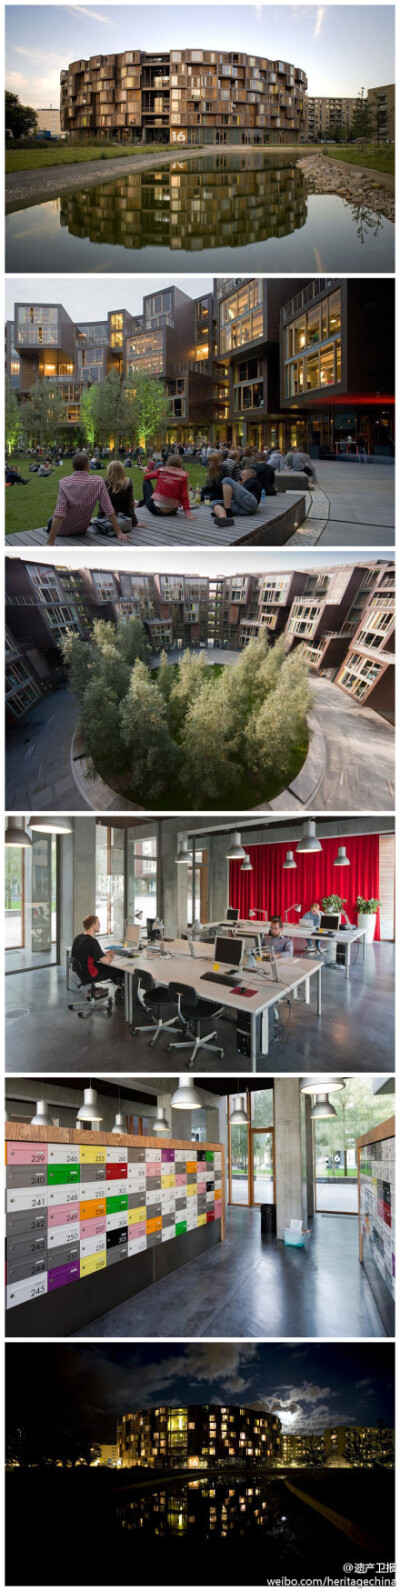 #B162#世界上最酷的大学生宿舍——Tietgenkollegiet，哥本哈根大学国际交换生宿舍，7层楼360个房间，设计灵感来自中国土楼。